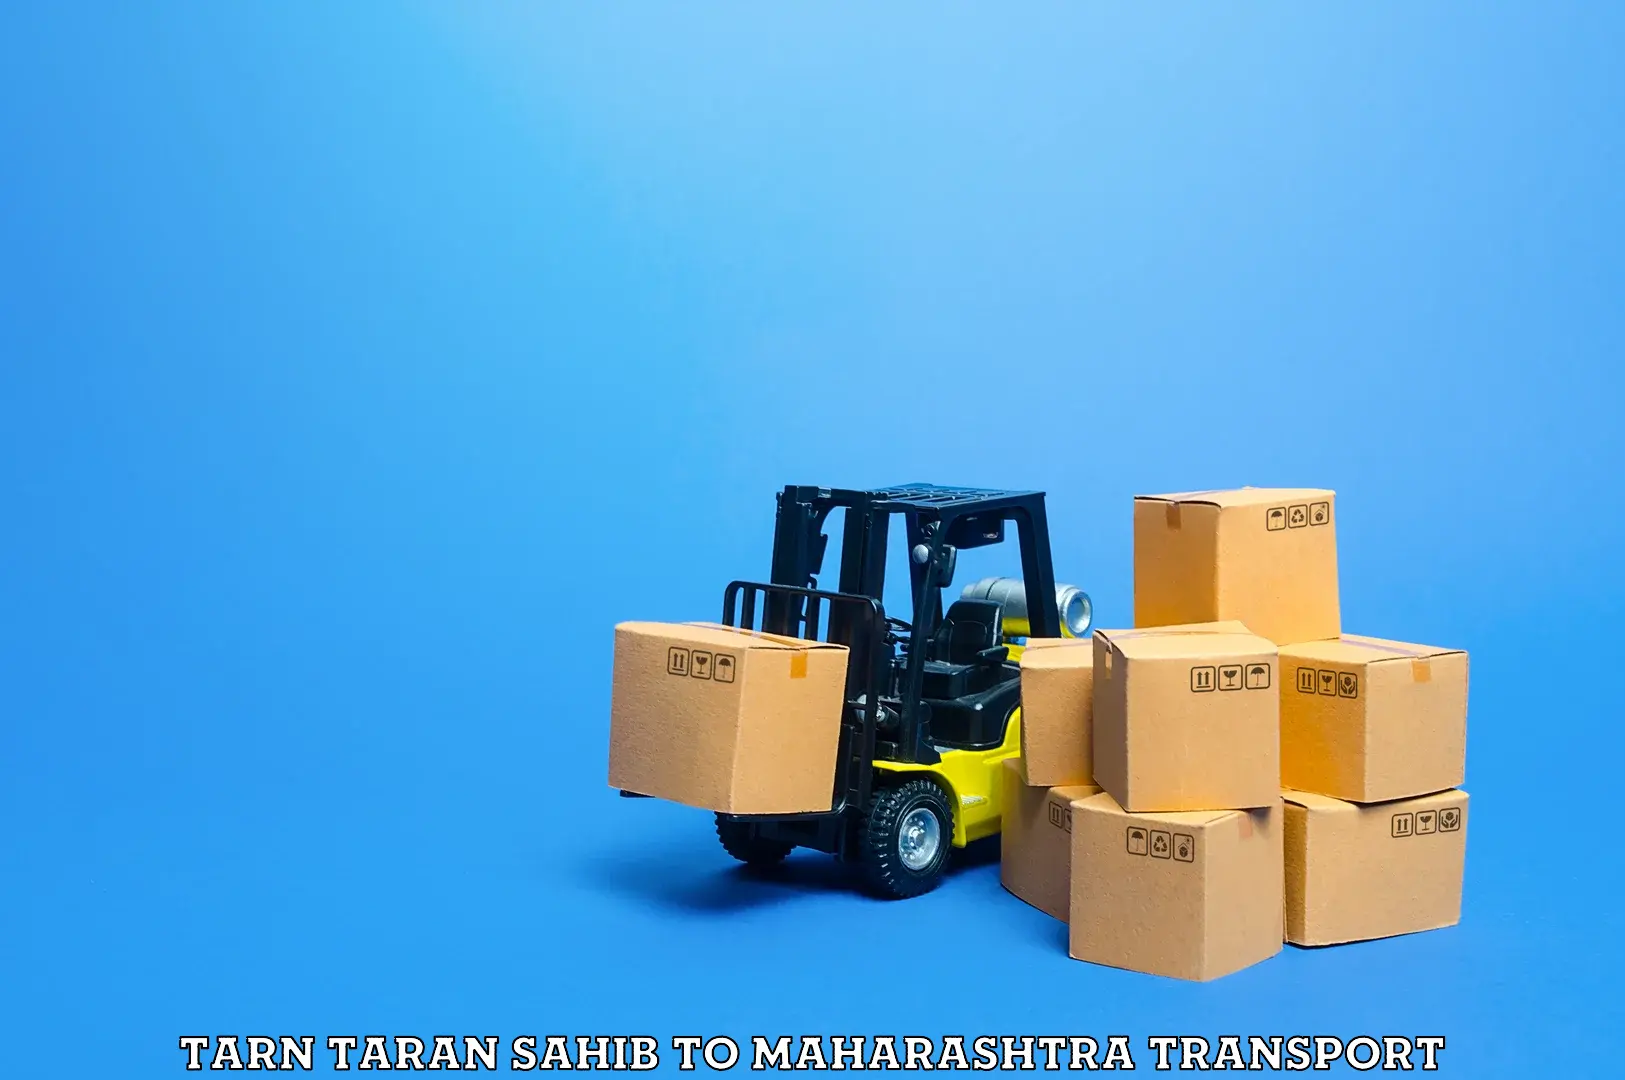 Furniture transport service Tarn Taran Sahib to Shirala